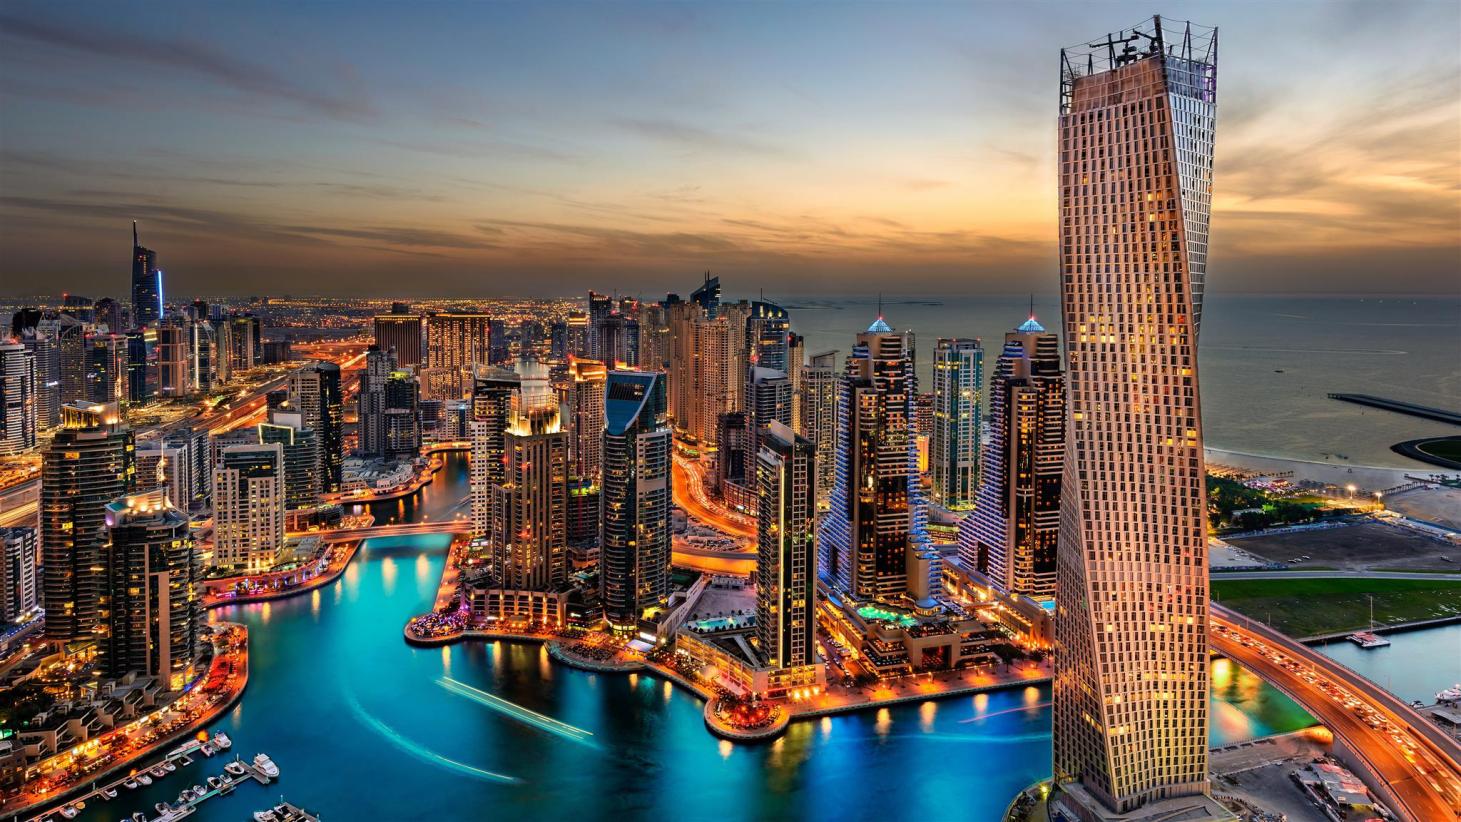 دبی، مقام برترین فرودگاه، هتل، و مقصد تجاری جهان را داراست